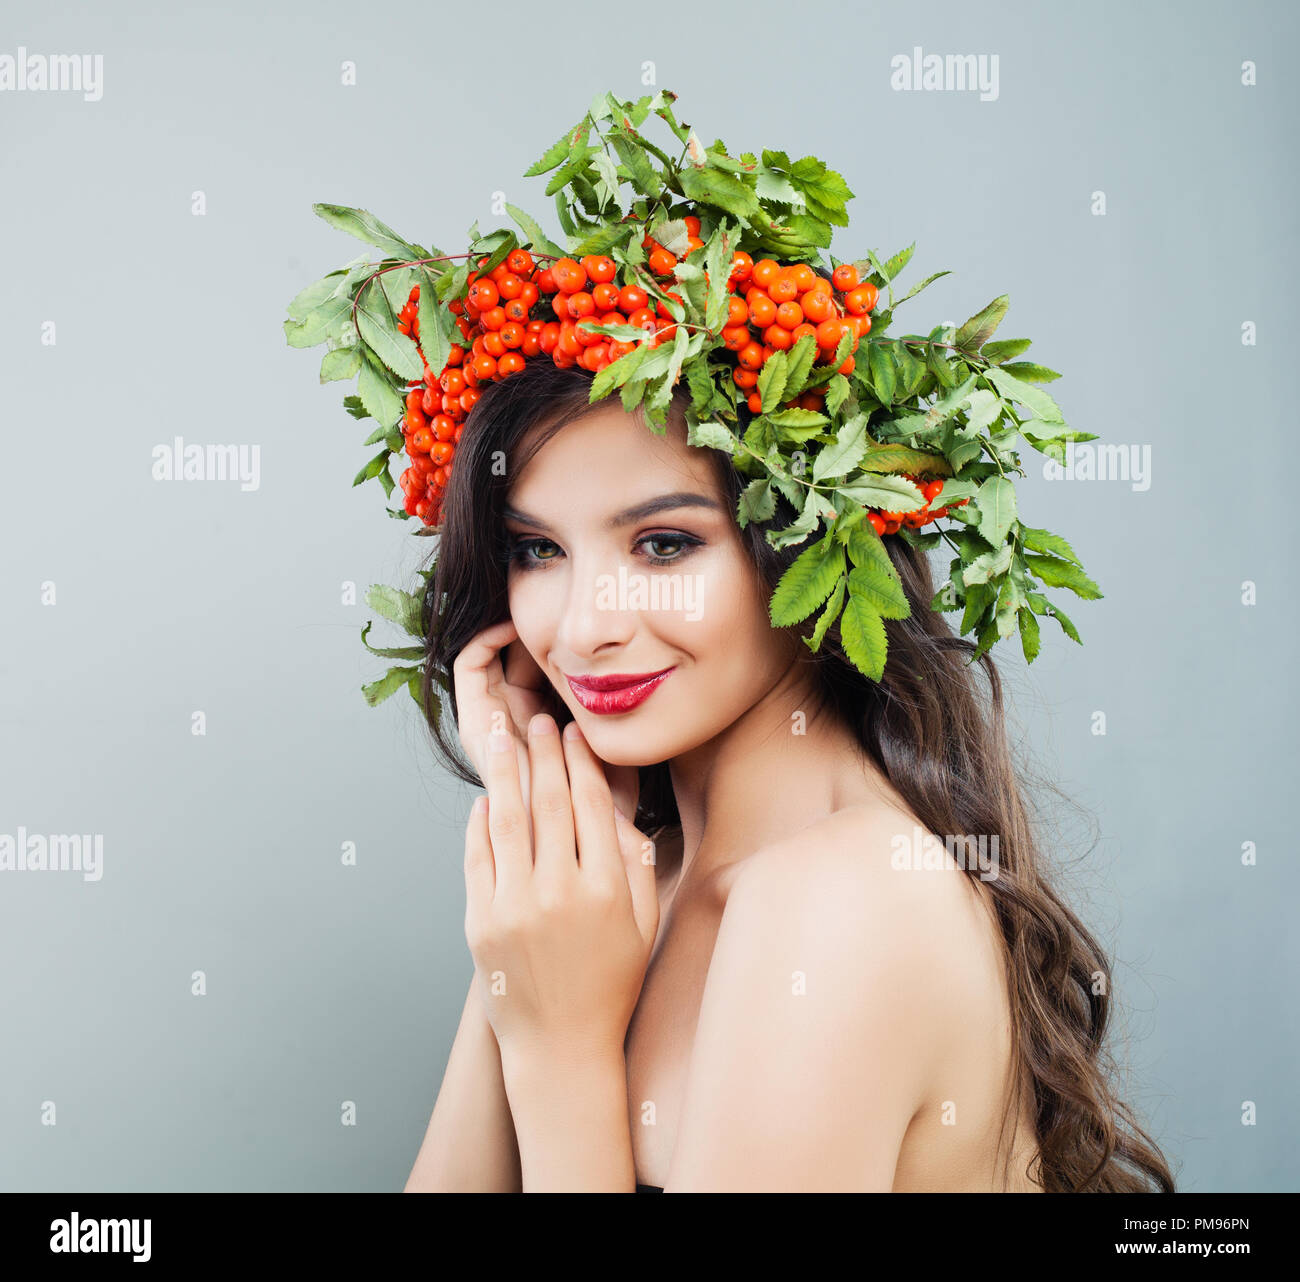 Brünette Frau lächelnd. Happy fashion model Mädchen mit gesunden curly Frisur, Make-up und roten Beeren und grüne Blätter Stockfoto